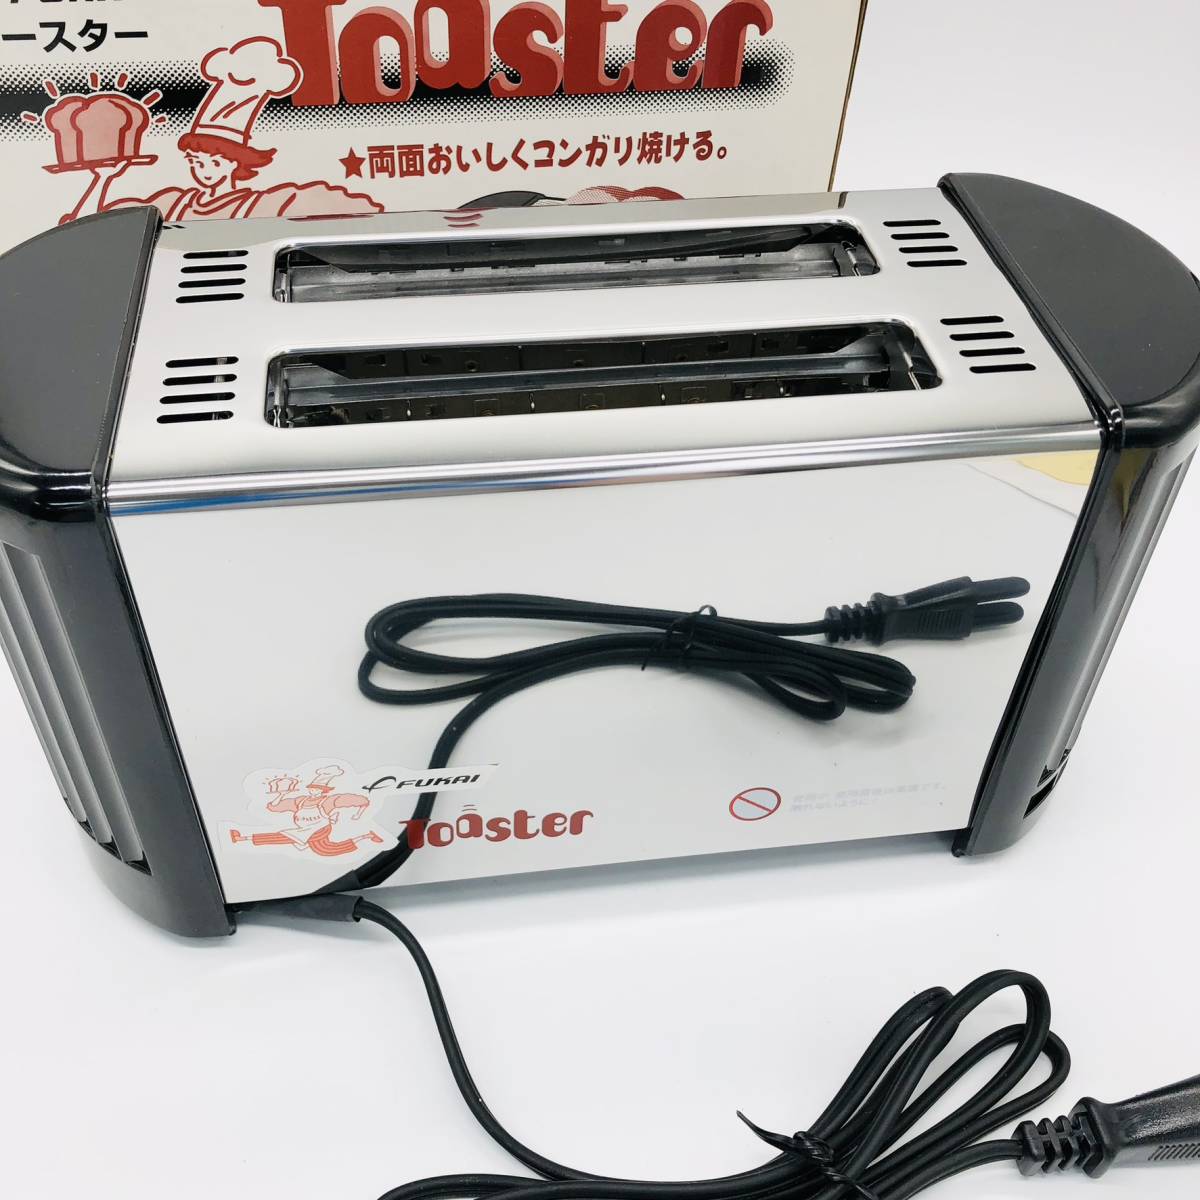 保管品 FUKAI FT-650 ポップアップトースター toaster トースター パン 2スライス 5段階火力調整 調理器具_画像3